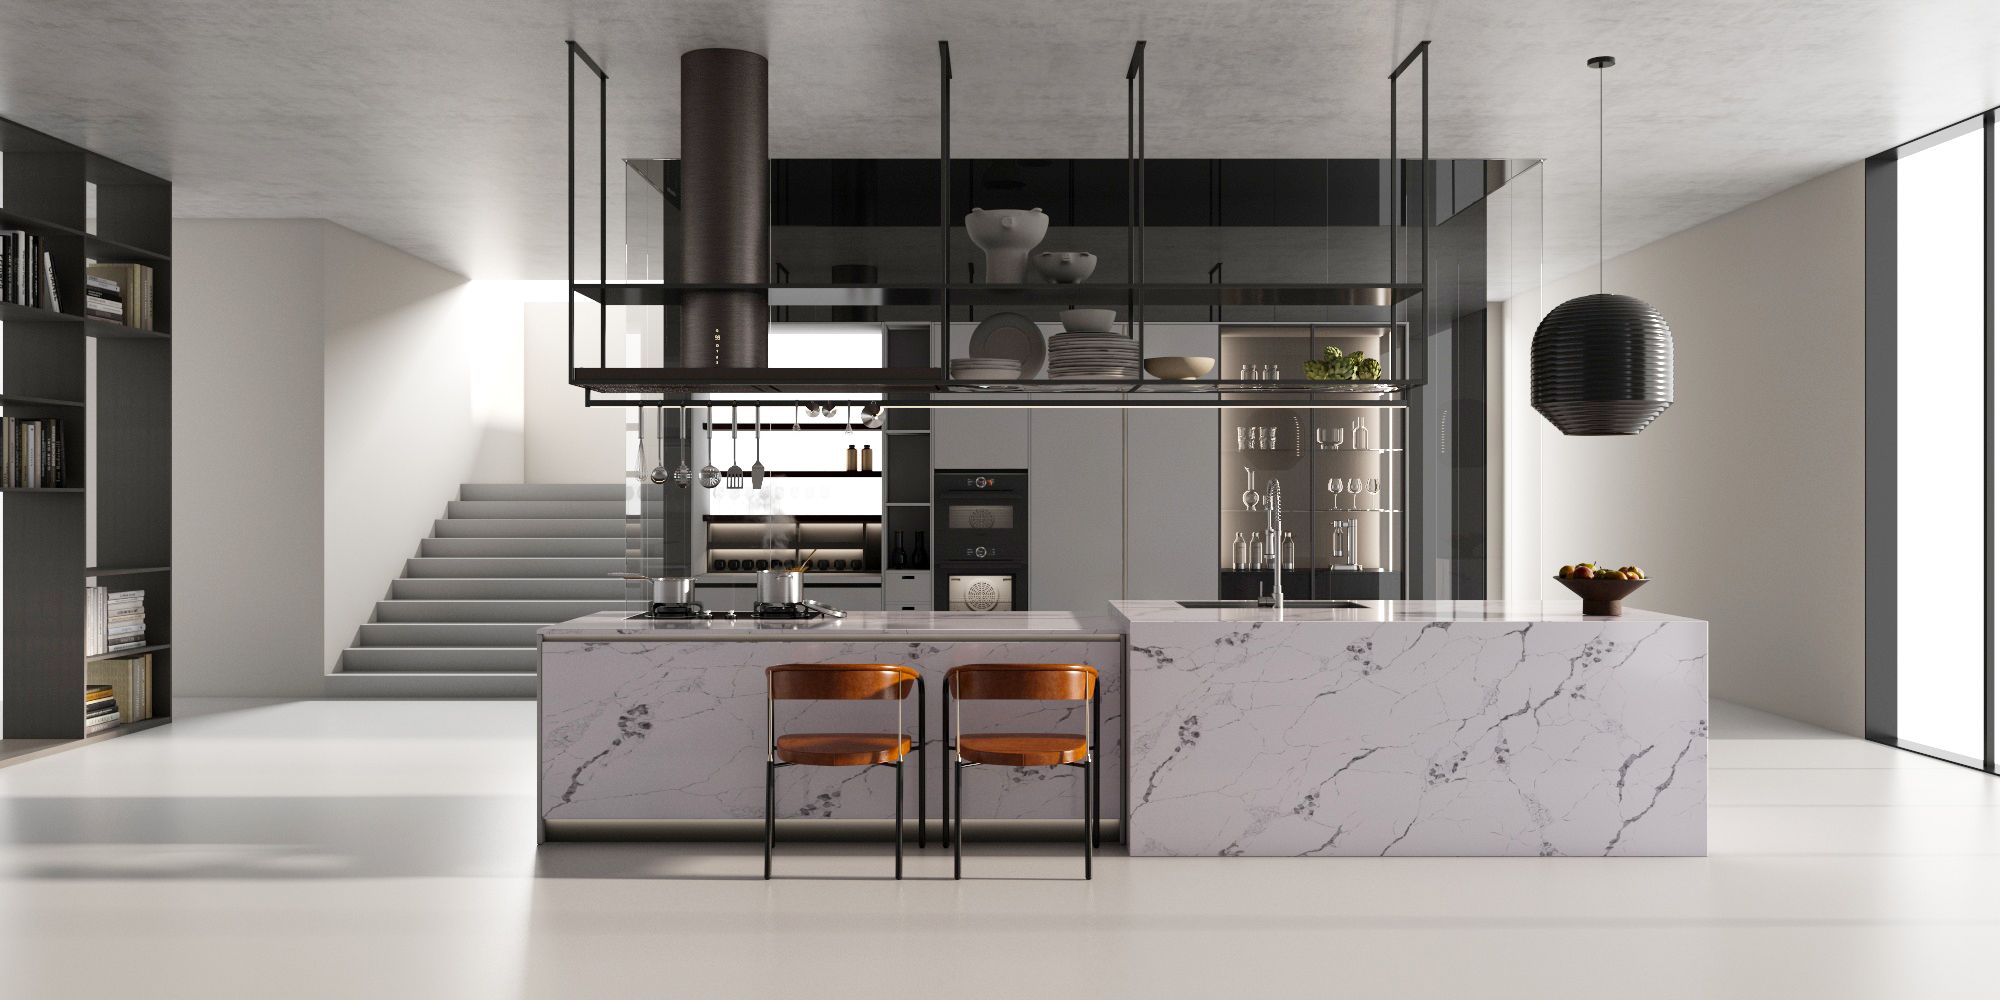 米乐M6台面｜重新定义厨房 打造最理想的厨房空间